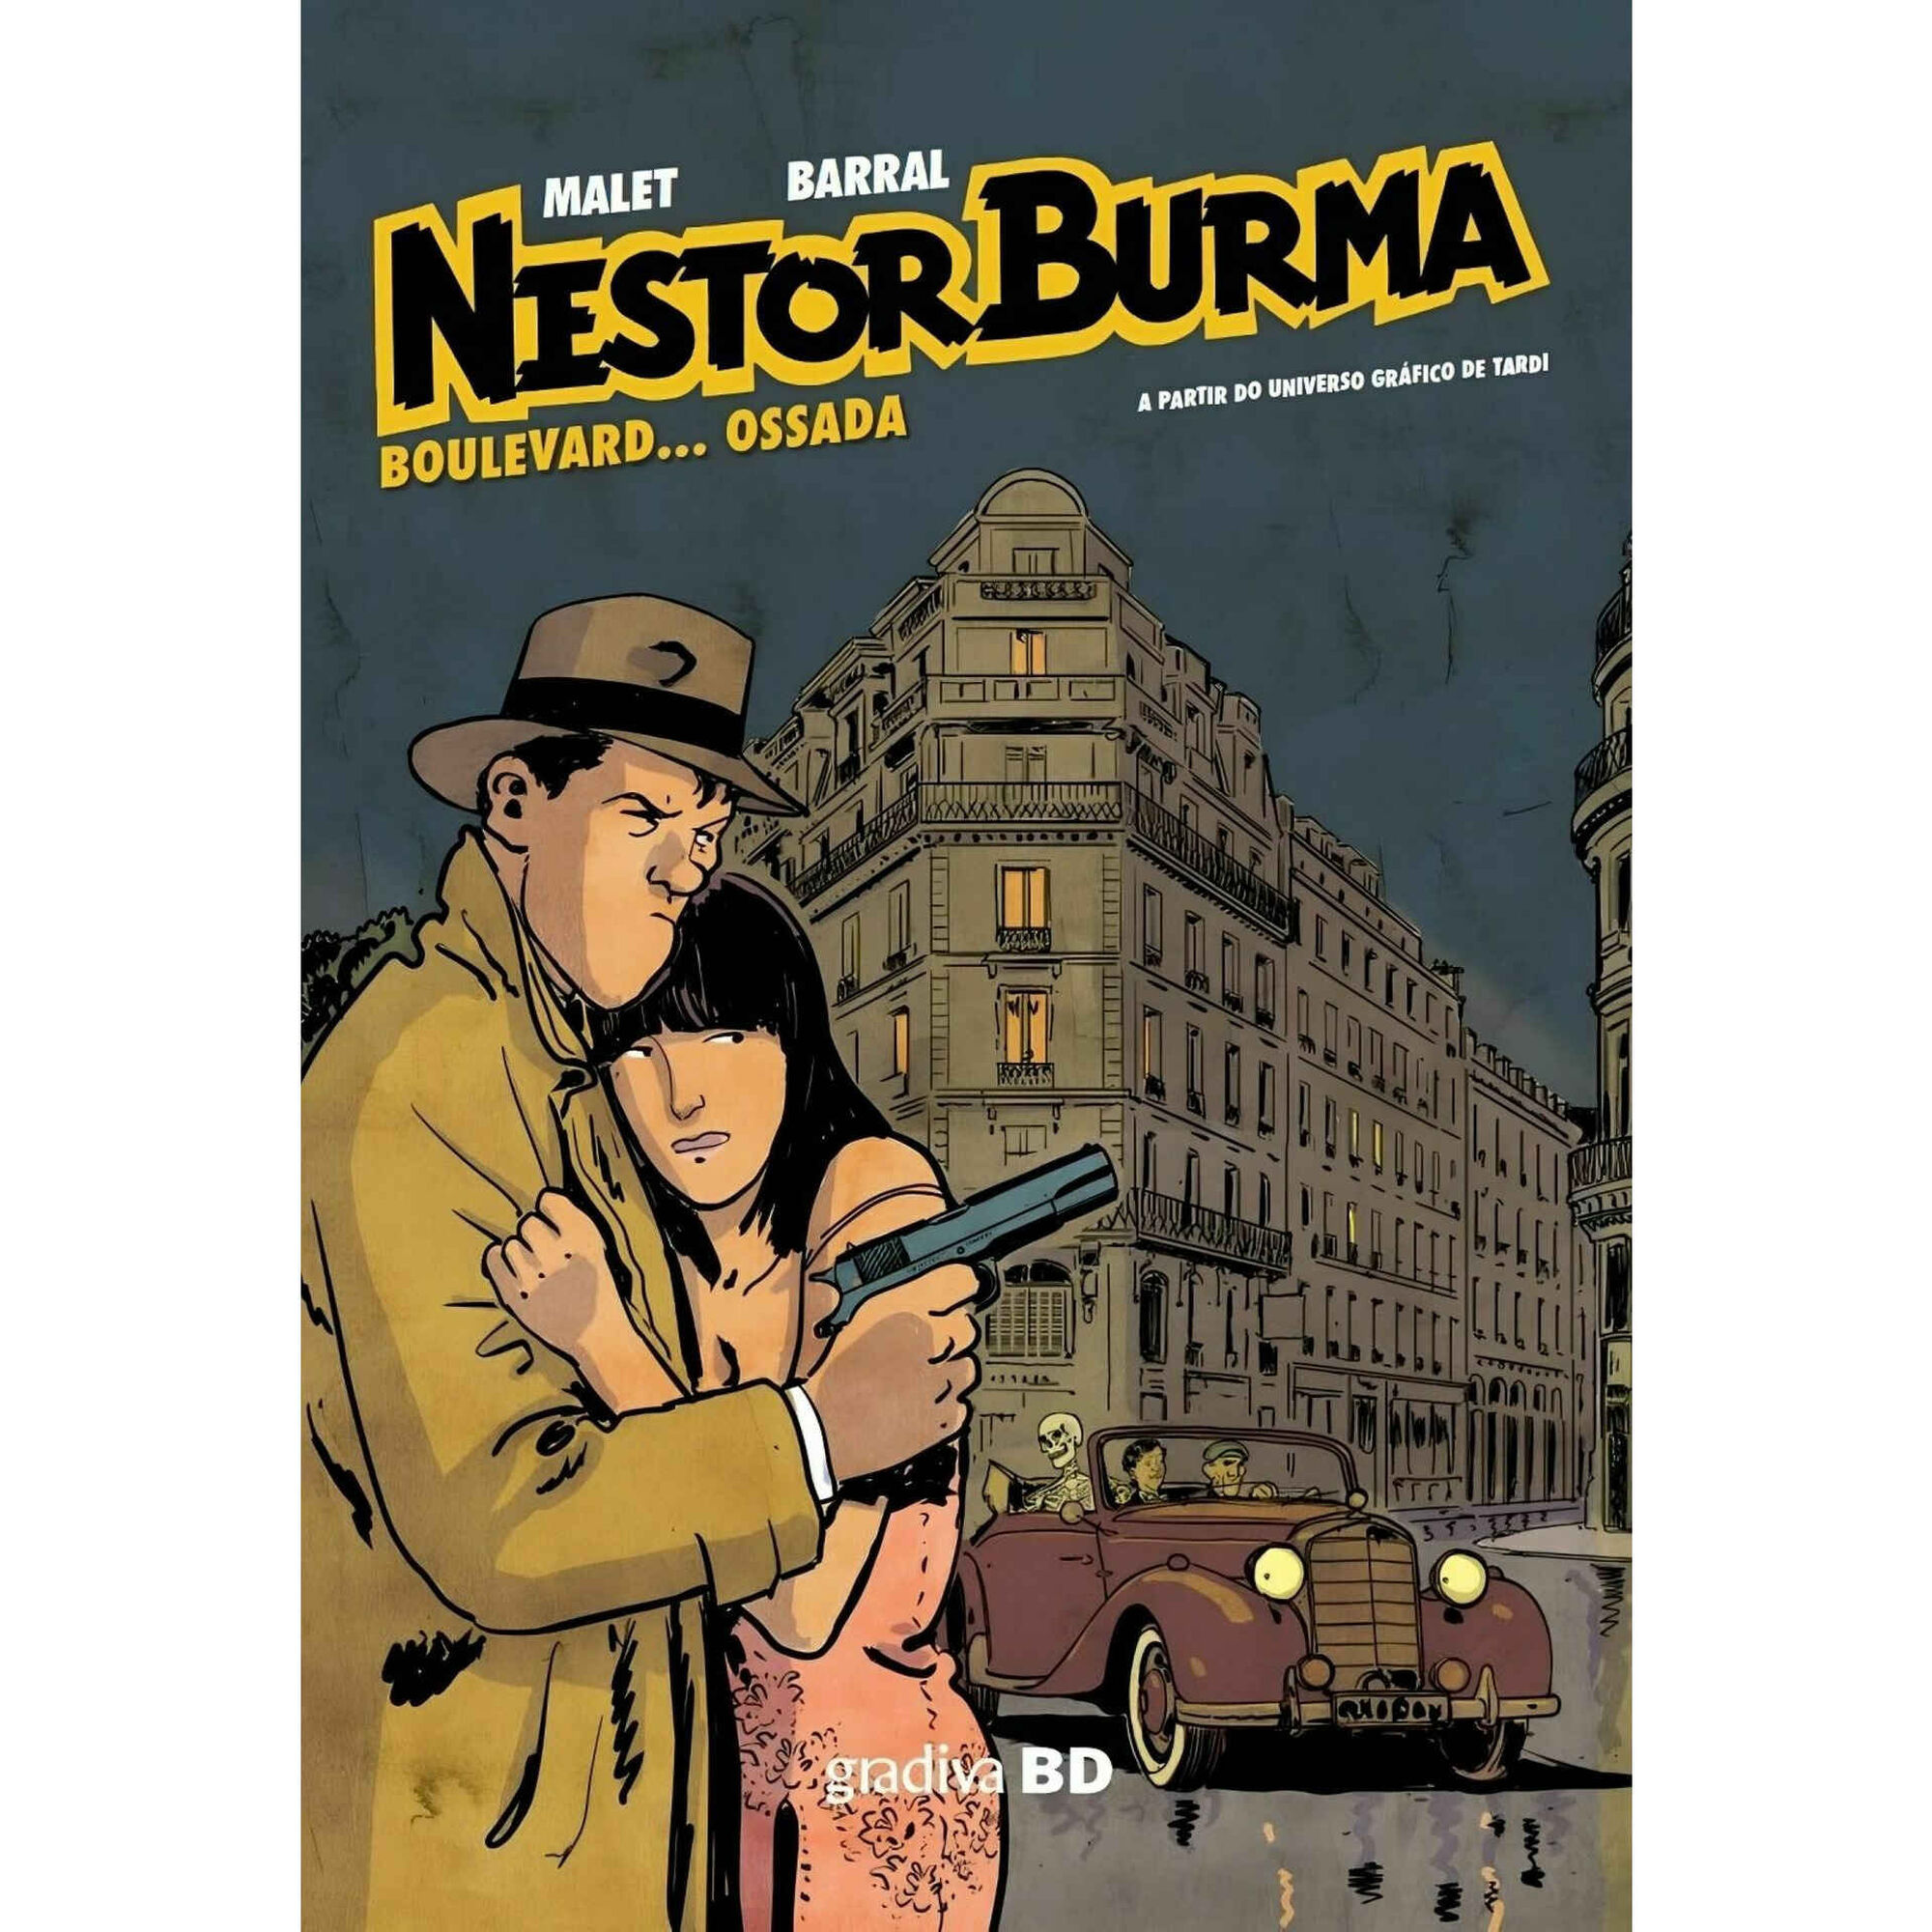 Nestor Burma - Boulevard… Ossada (volume 4)